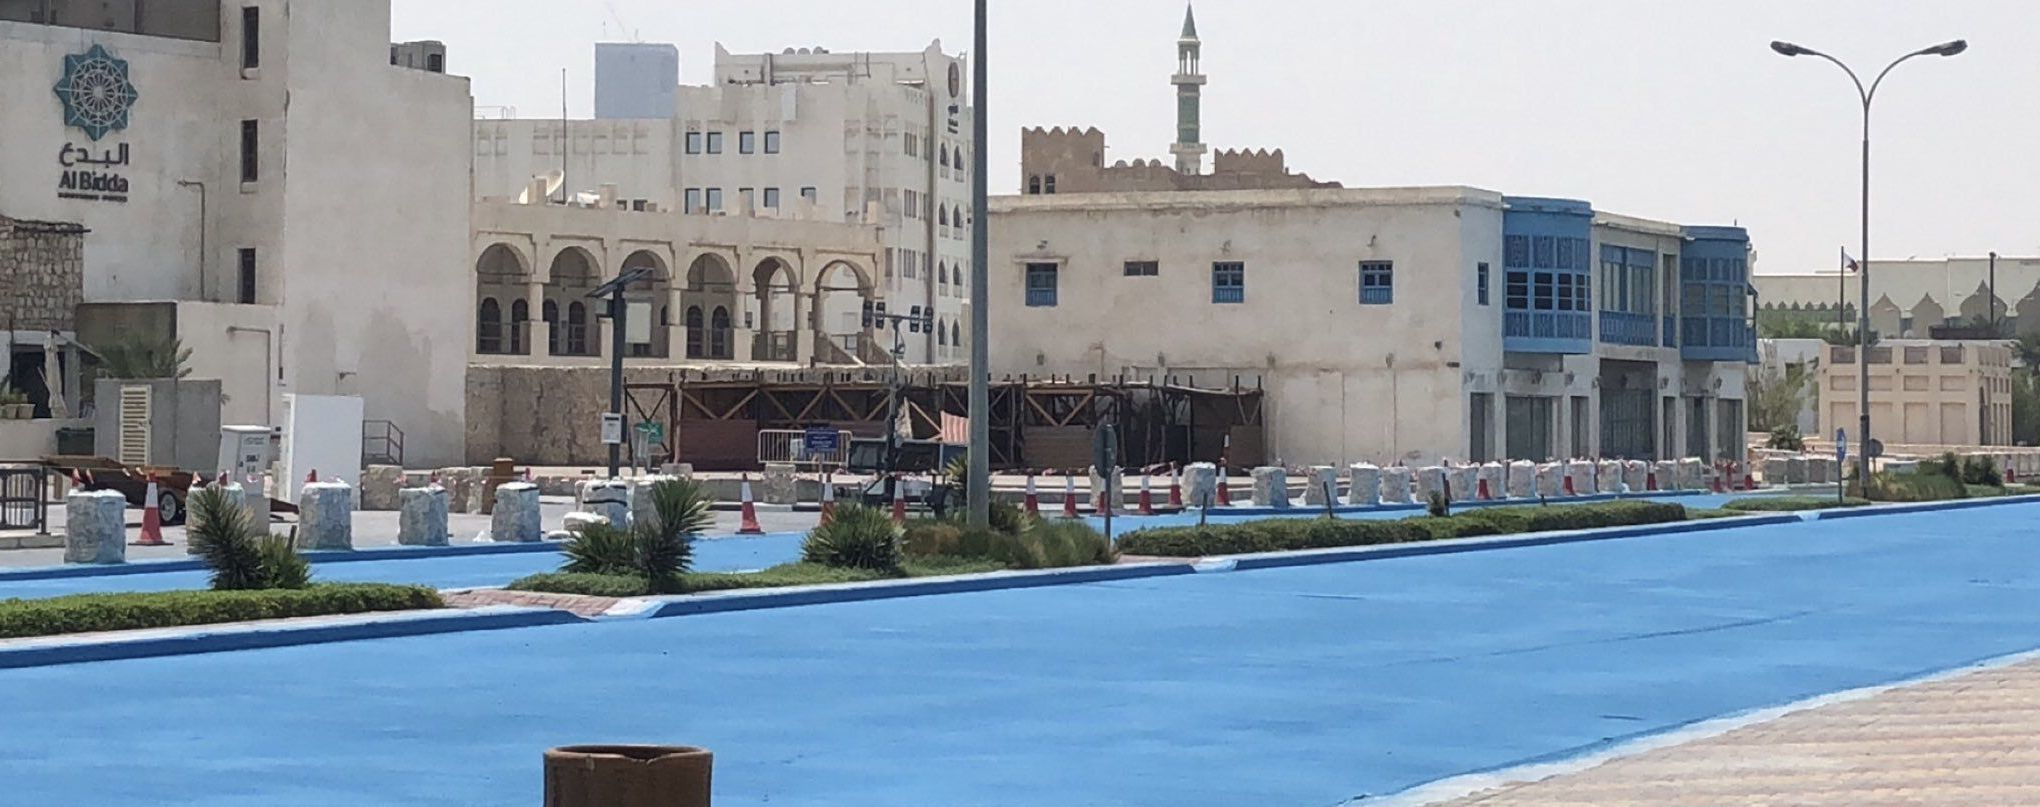 У Катарі дорогу пофарбували у синій колір, щоб подовжити термін її служби